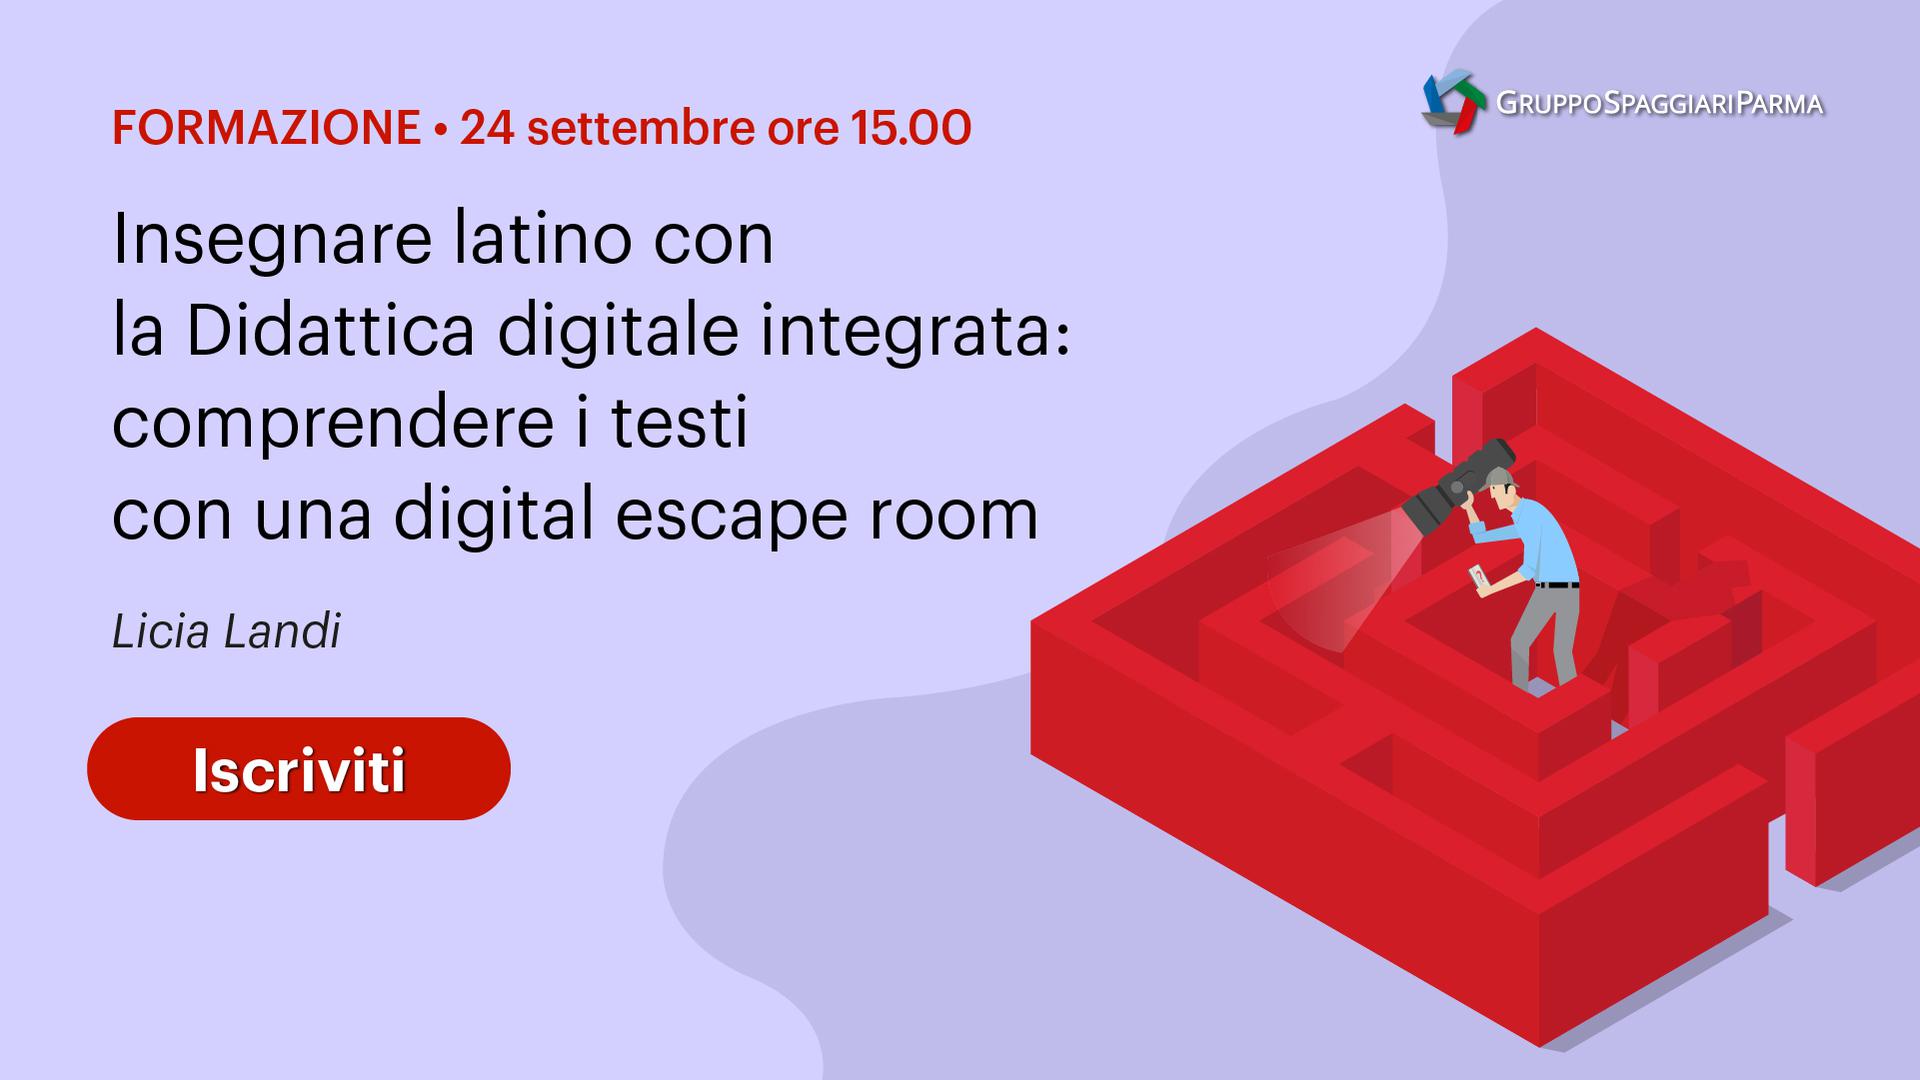 Insegnare latino con la Didattica digitale integrata: comprendere i testi con una digital escape room